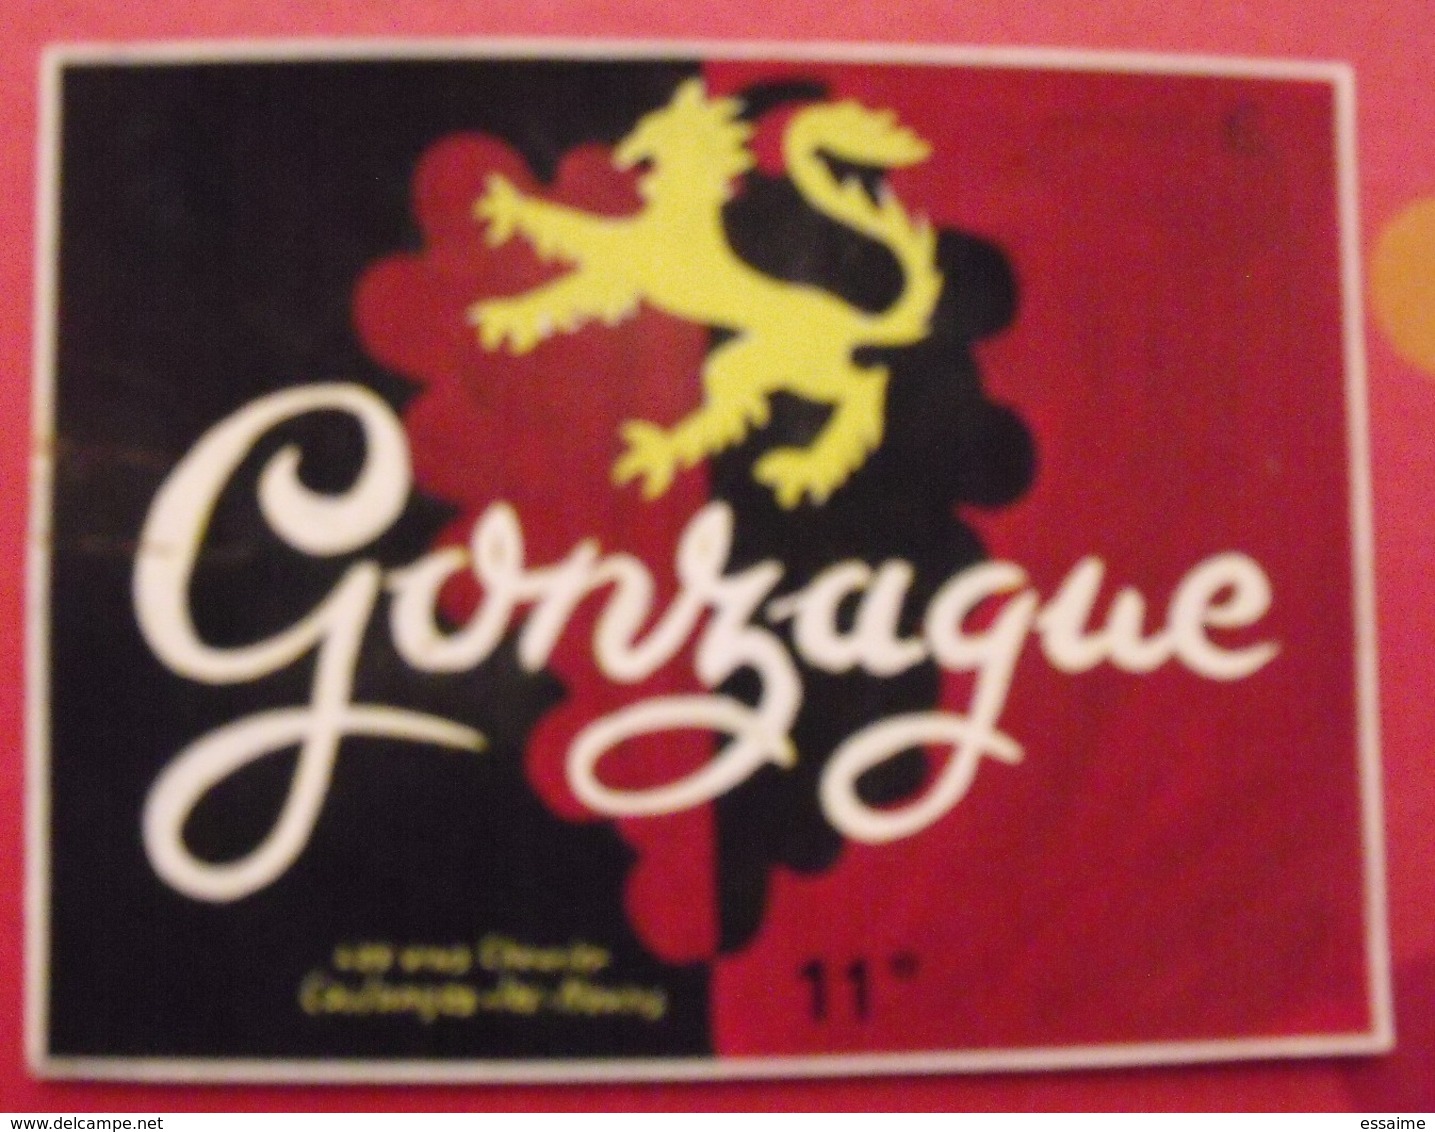 Maquette Gouache D'une étiquette De Vin. Gonzague. Vins Chevrier Coulanges-les-Nevers. Dejoie Vers 1960 - Alcools